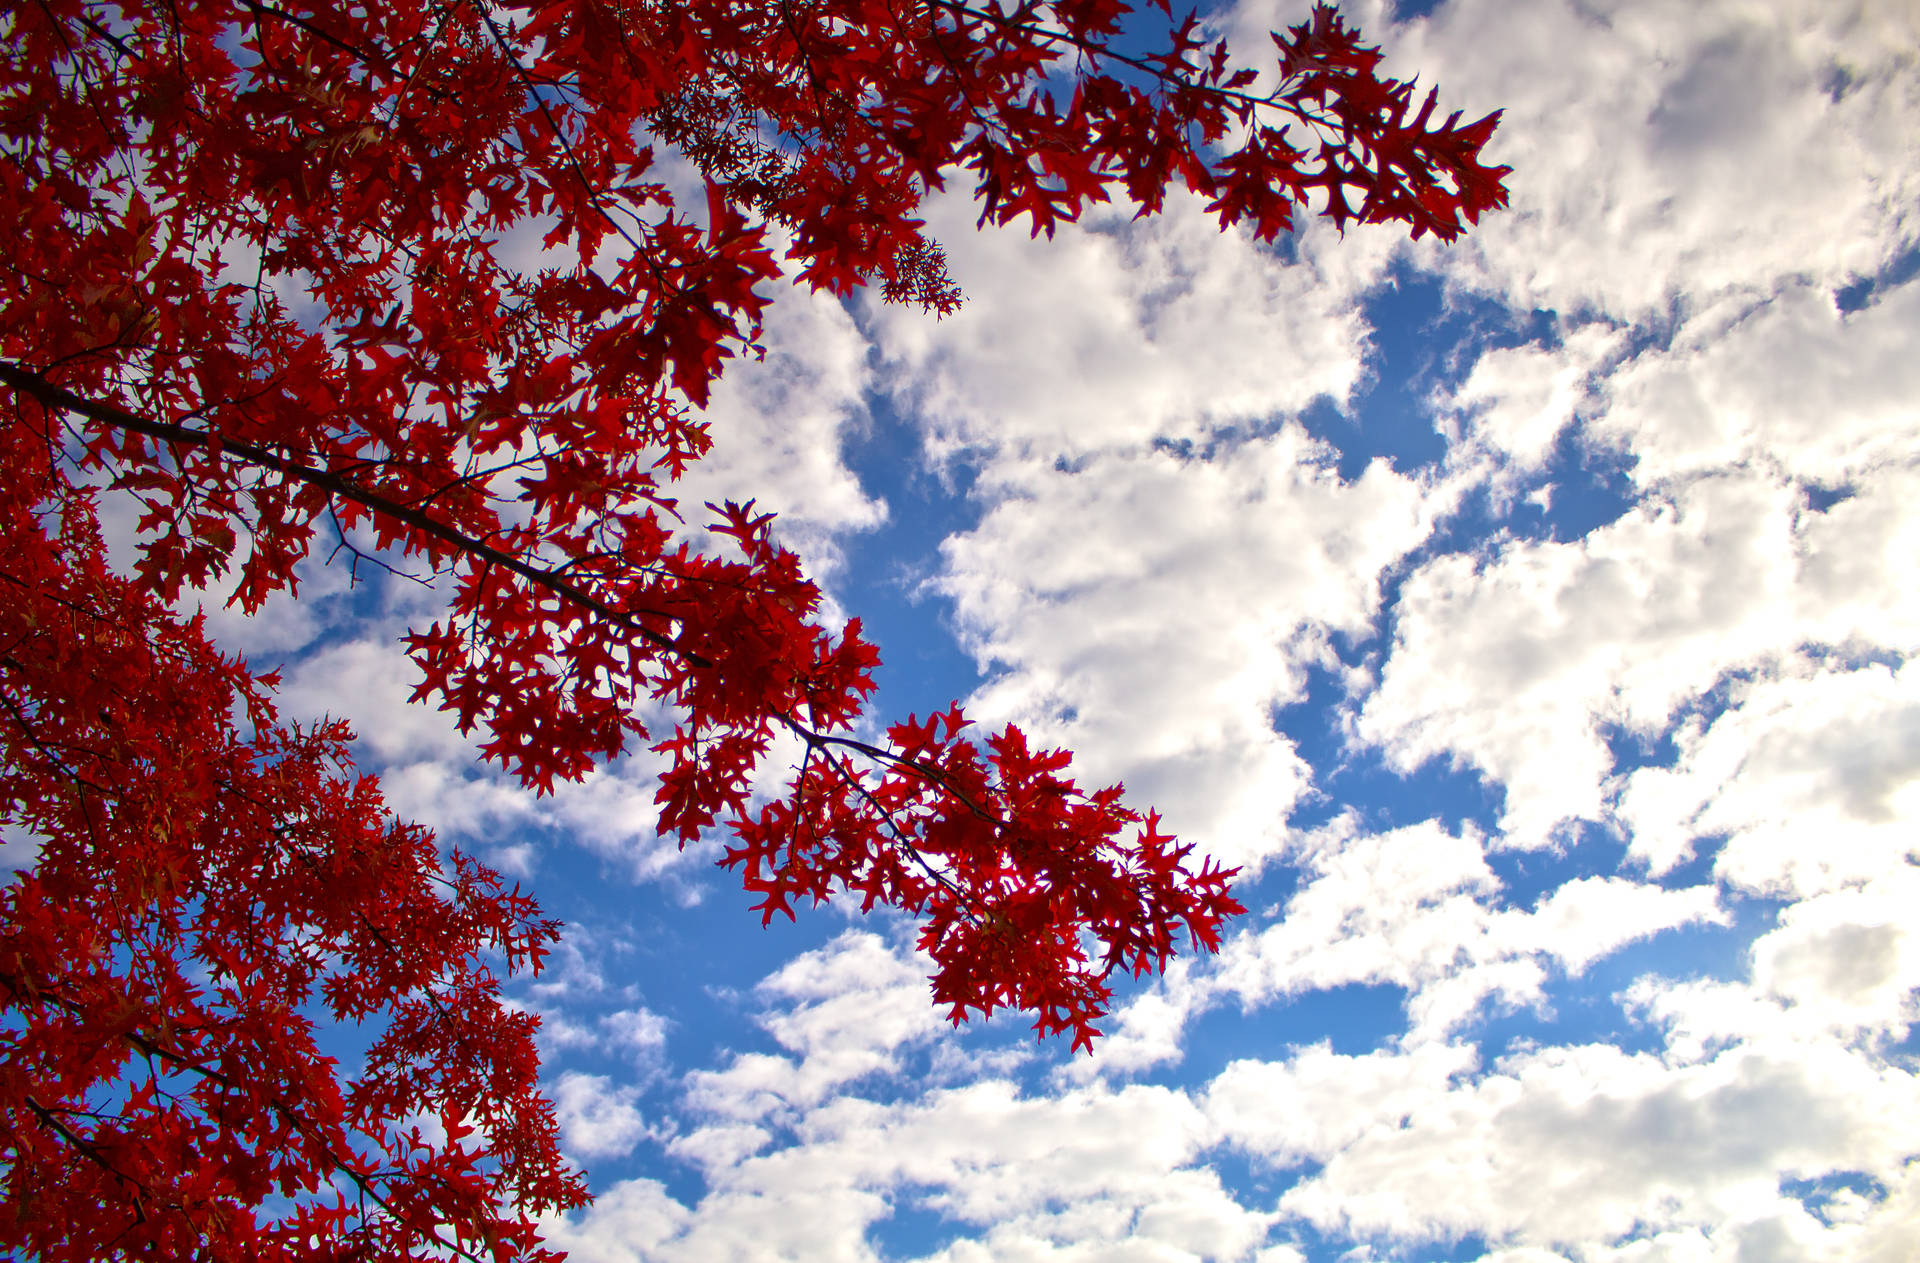 Maples Leaves Against Blue Sky Wallpaper